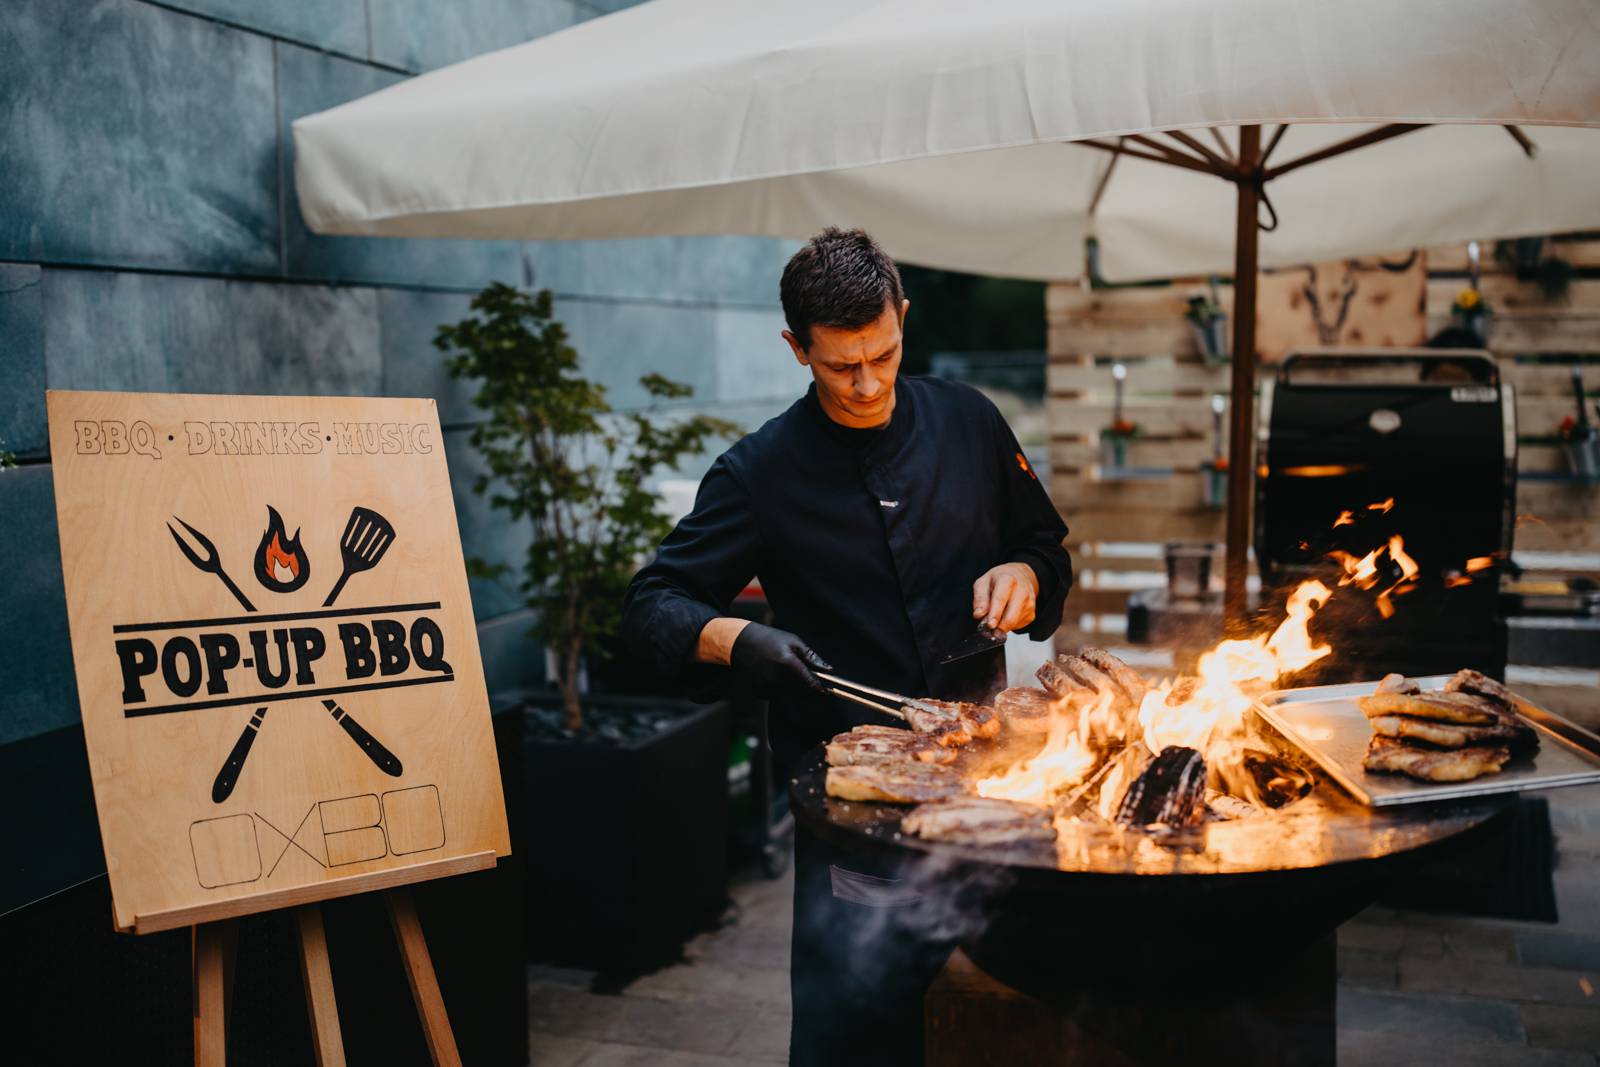 Posjetite BBQ party na terasi OXBO restorana hotela Doubletree by Hilton u Zagrebu!